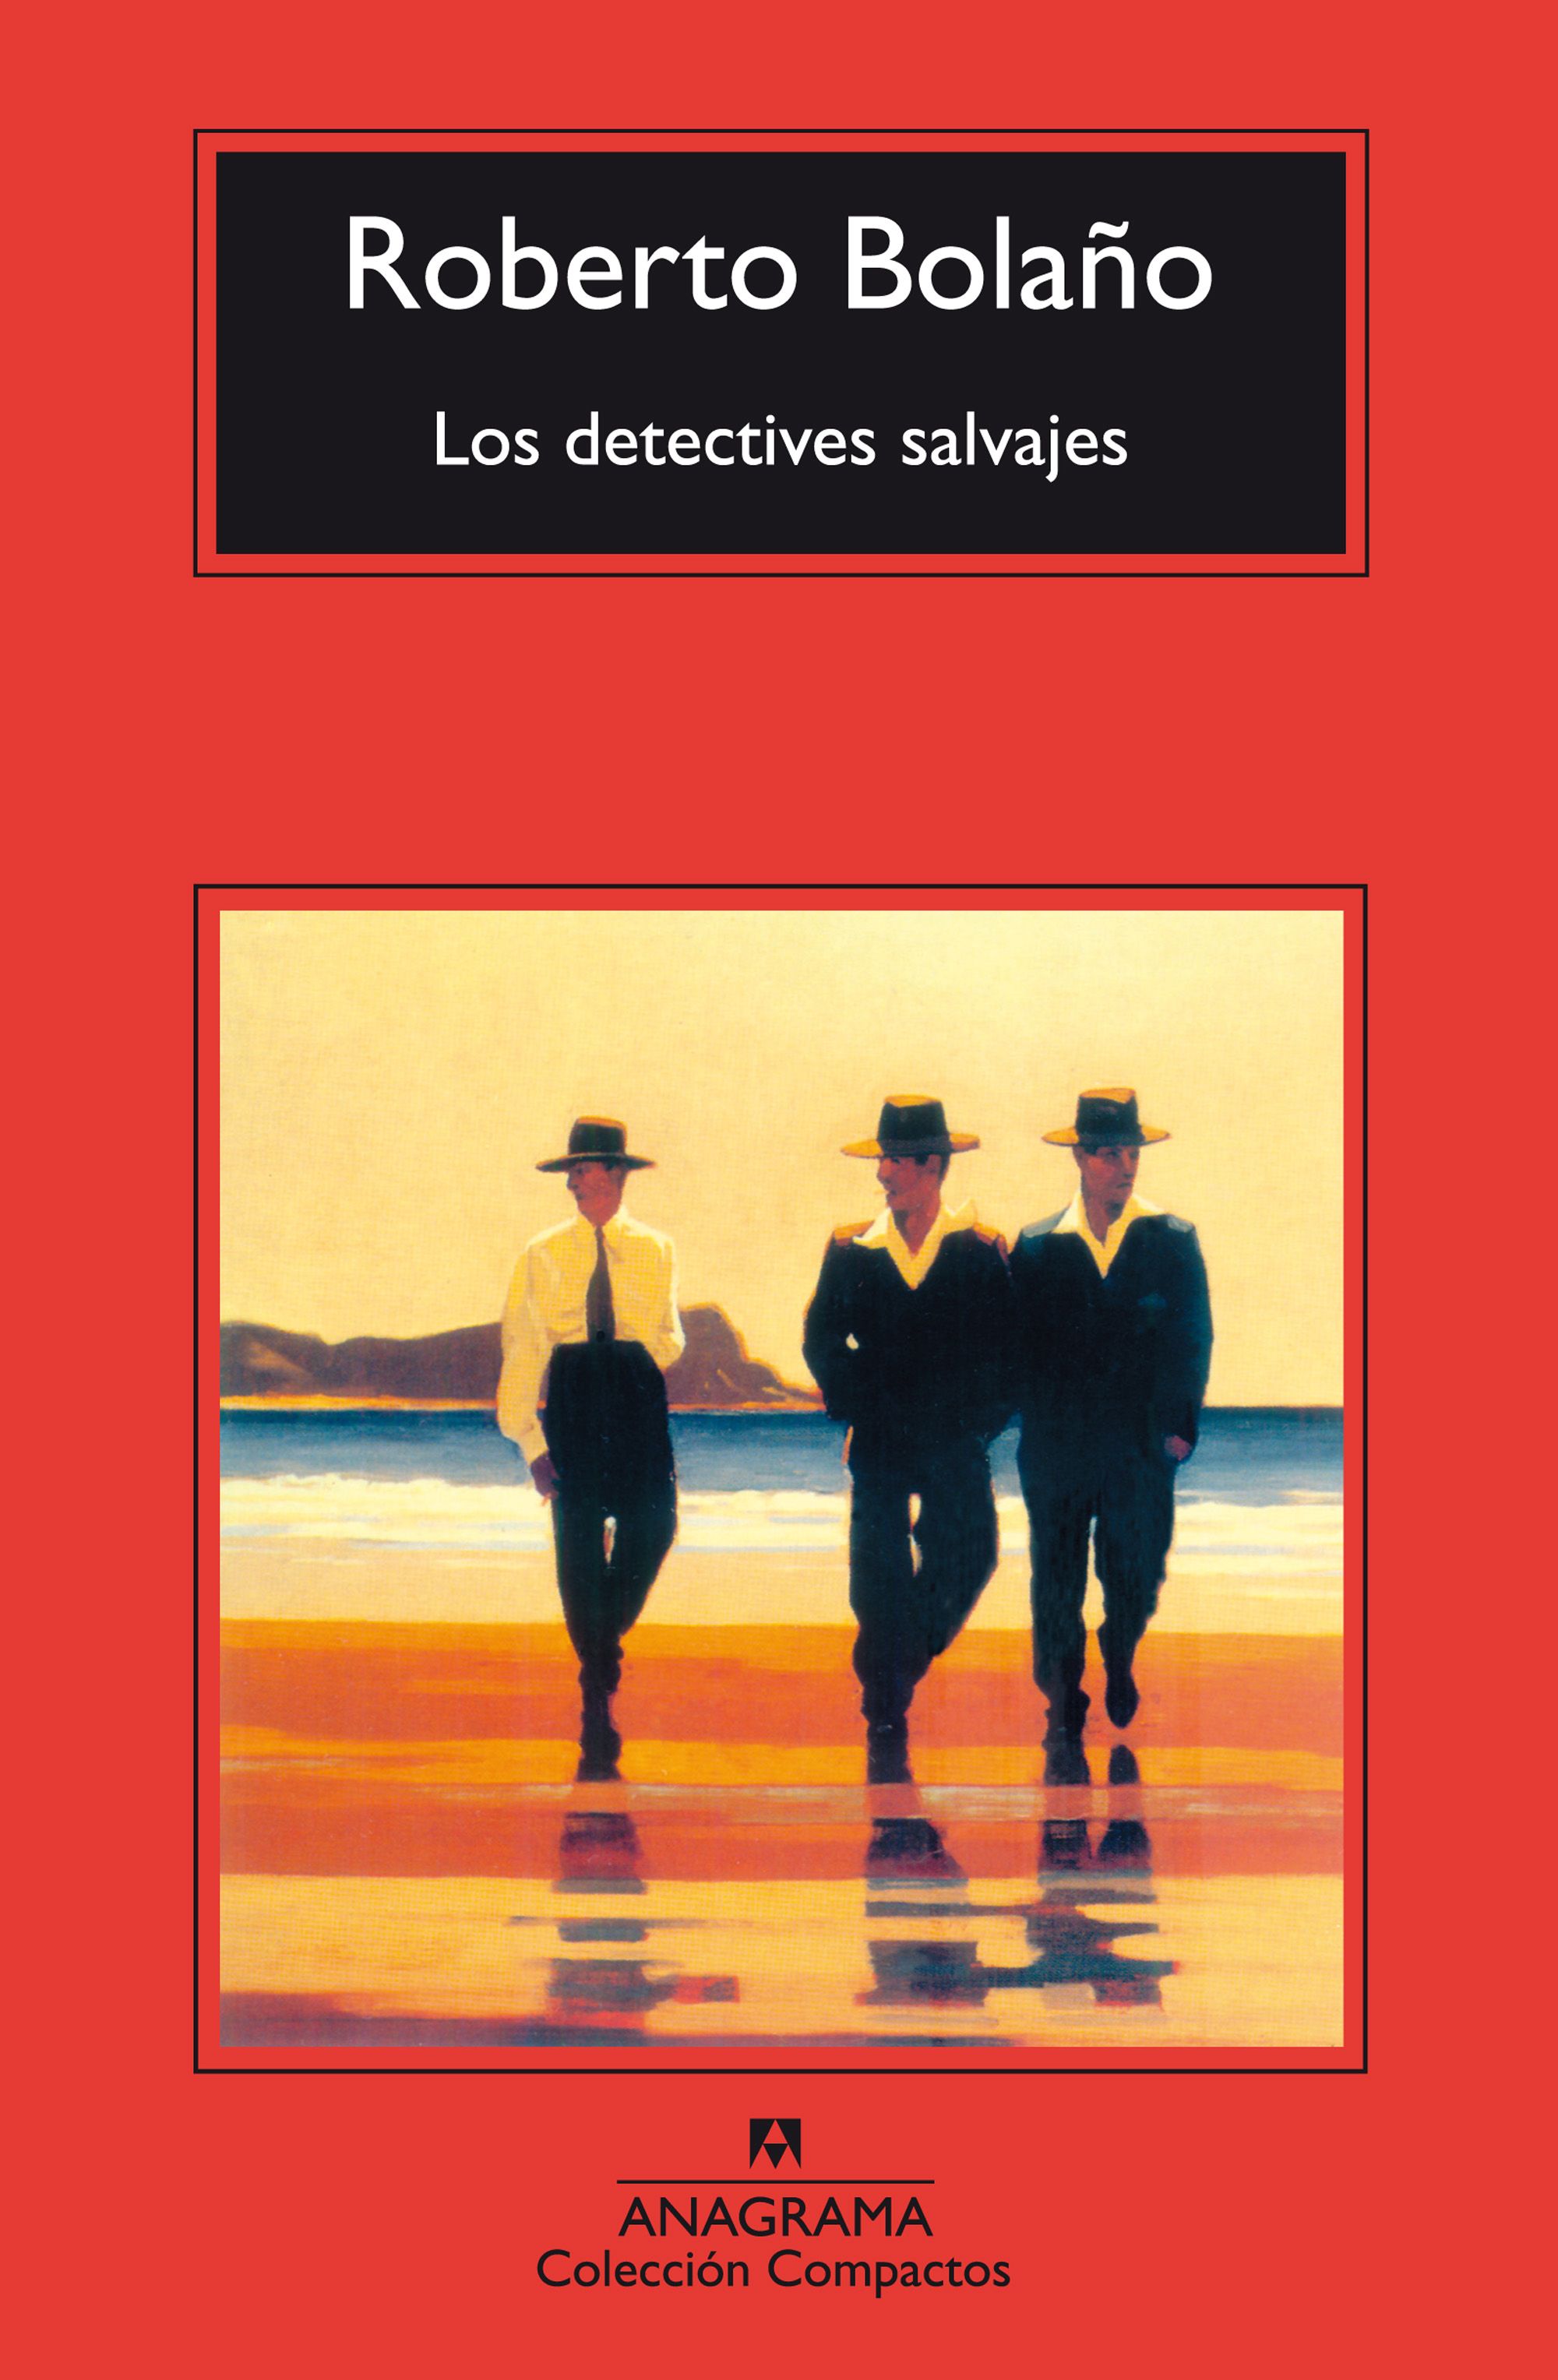 'Los detectives salvajes' – Roberto Bolaños